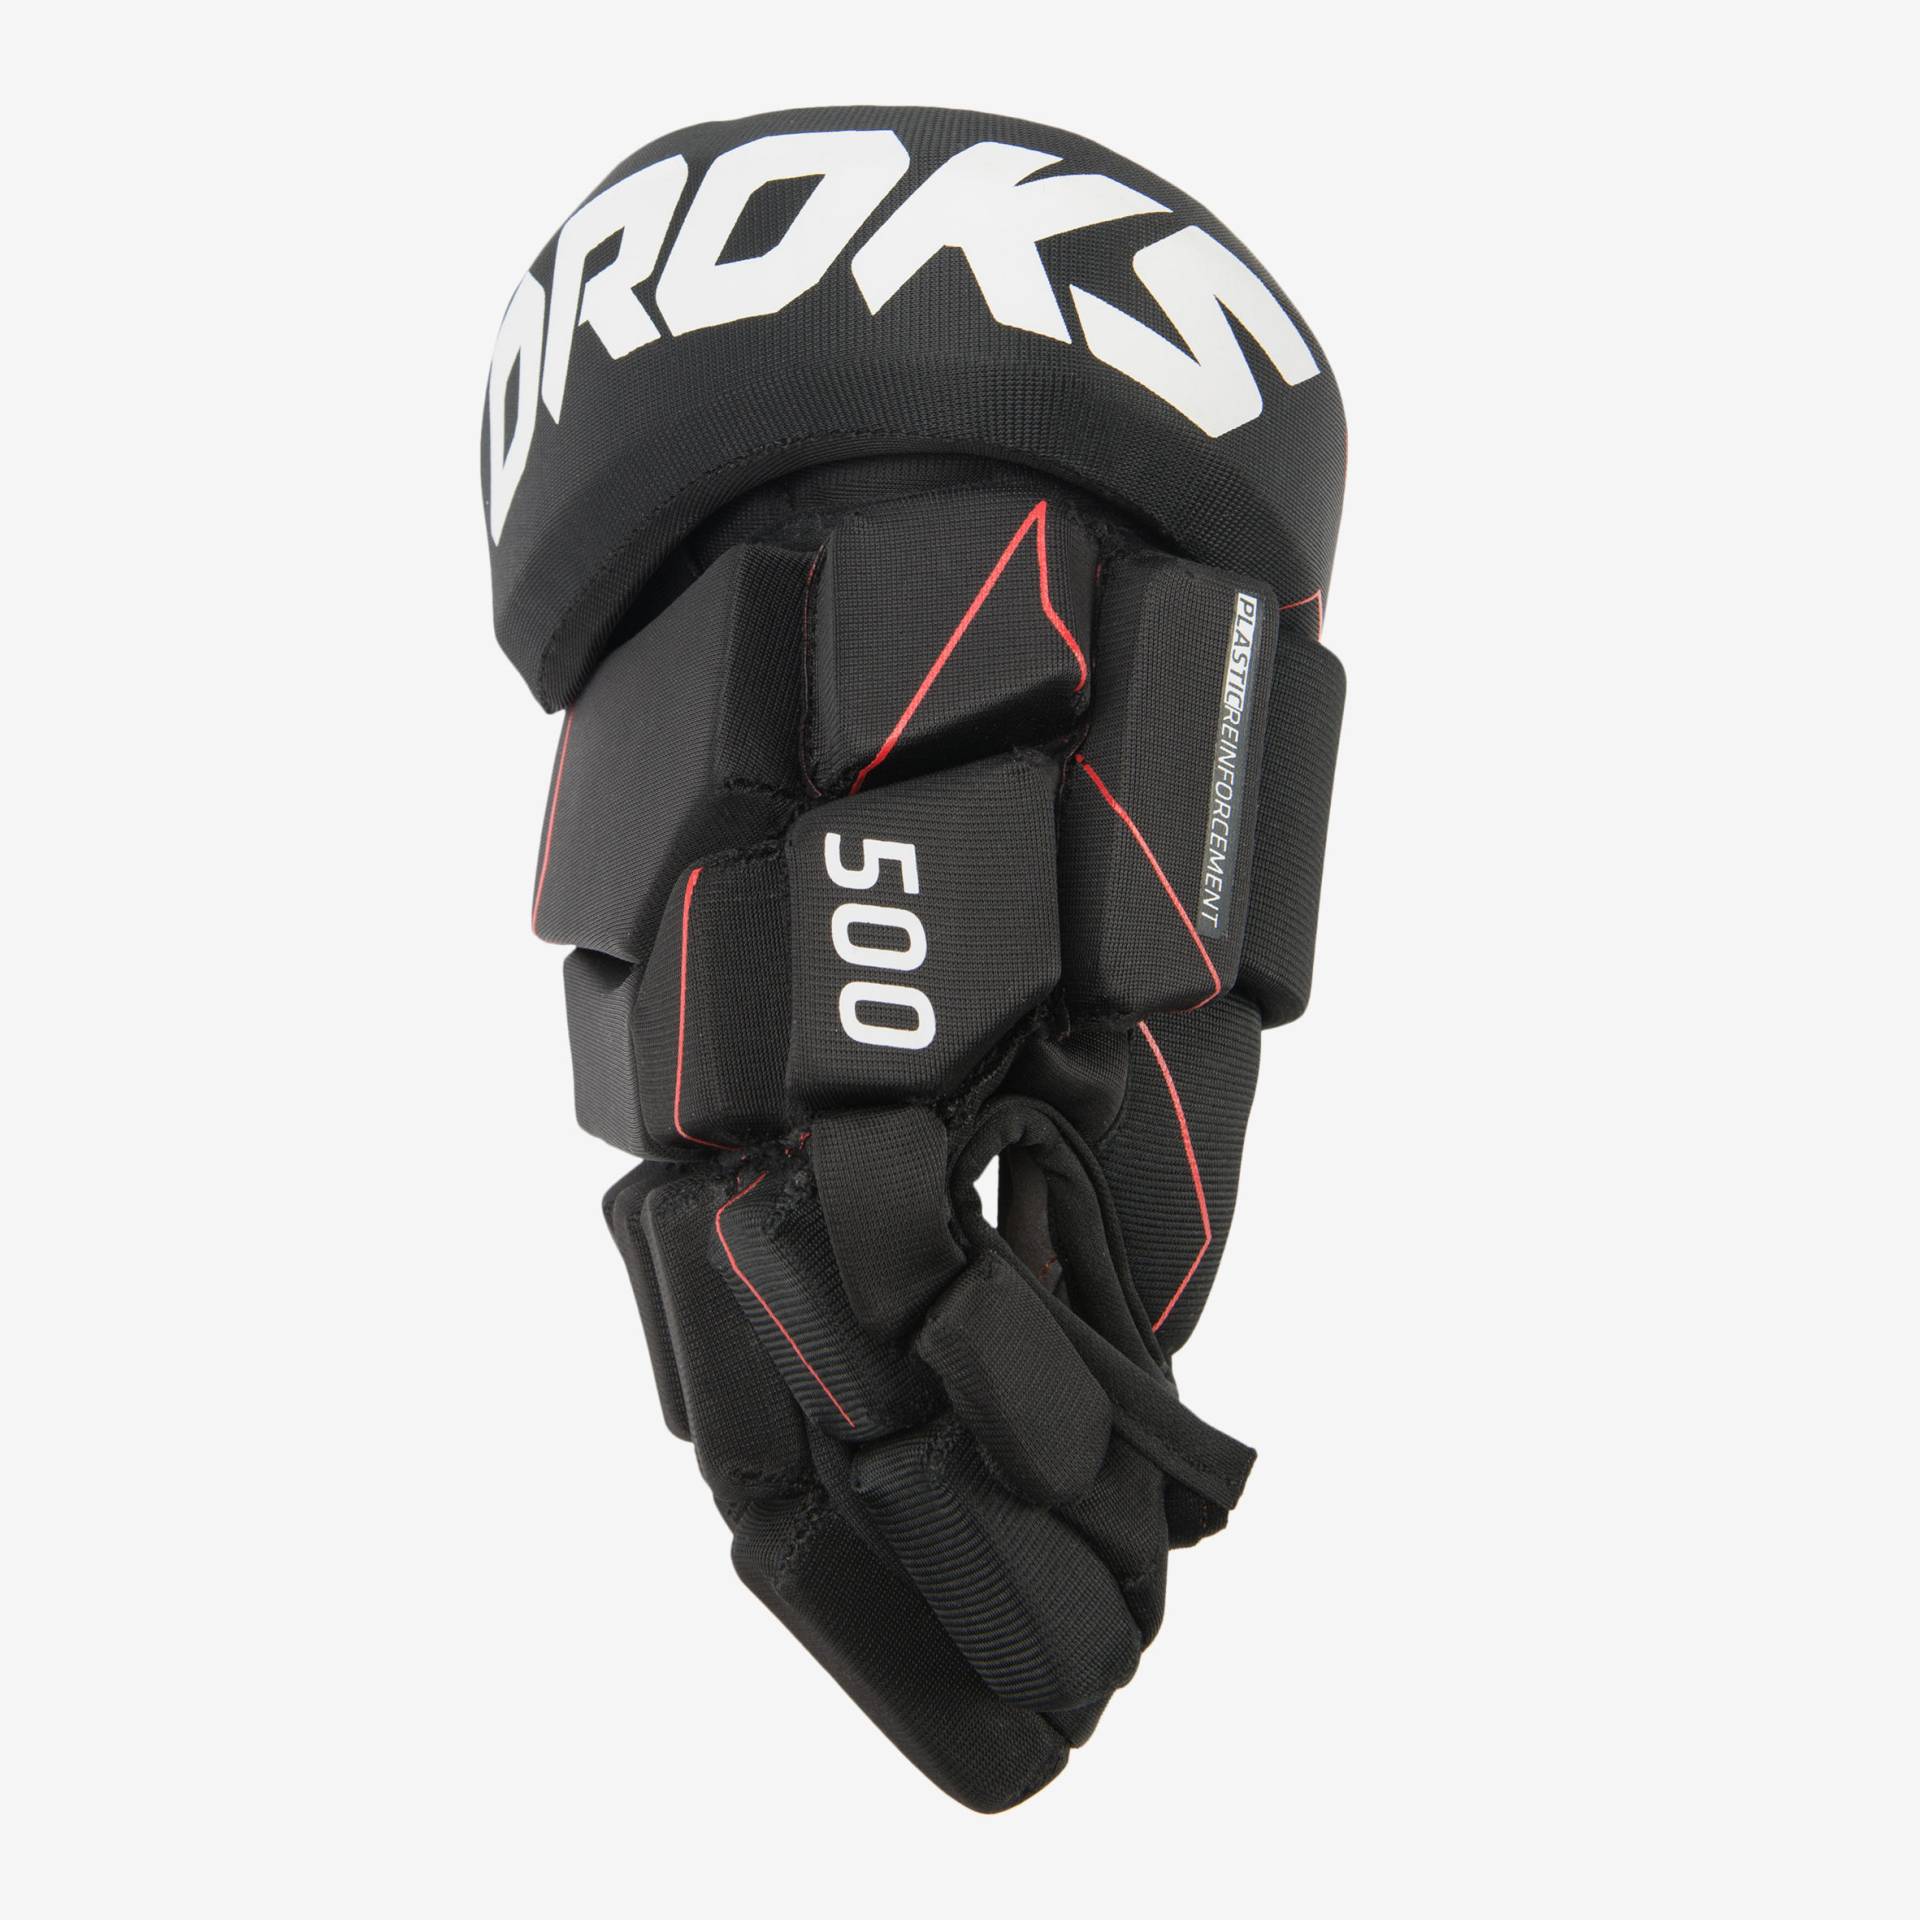 Eishockey-Handschuhe IH 500 von OROKS